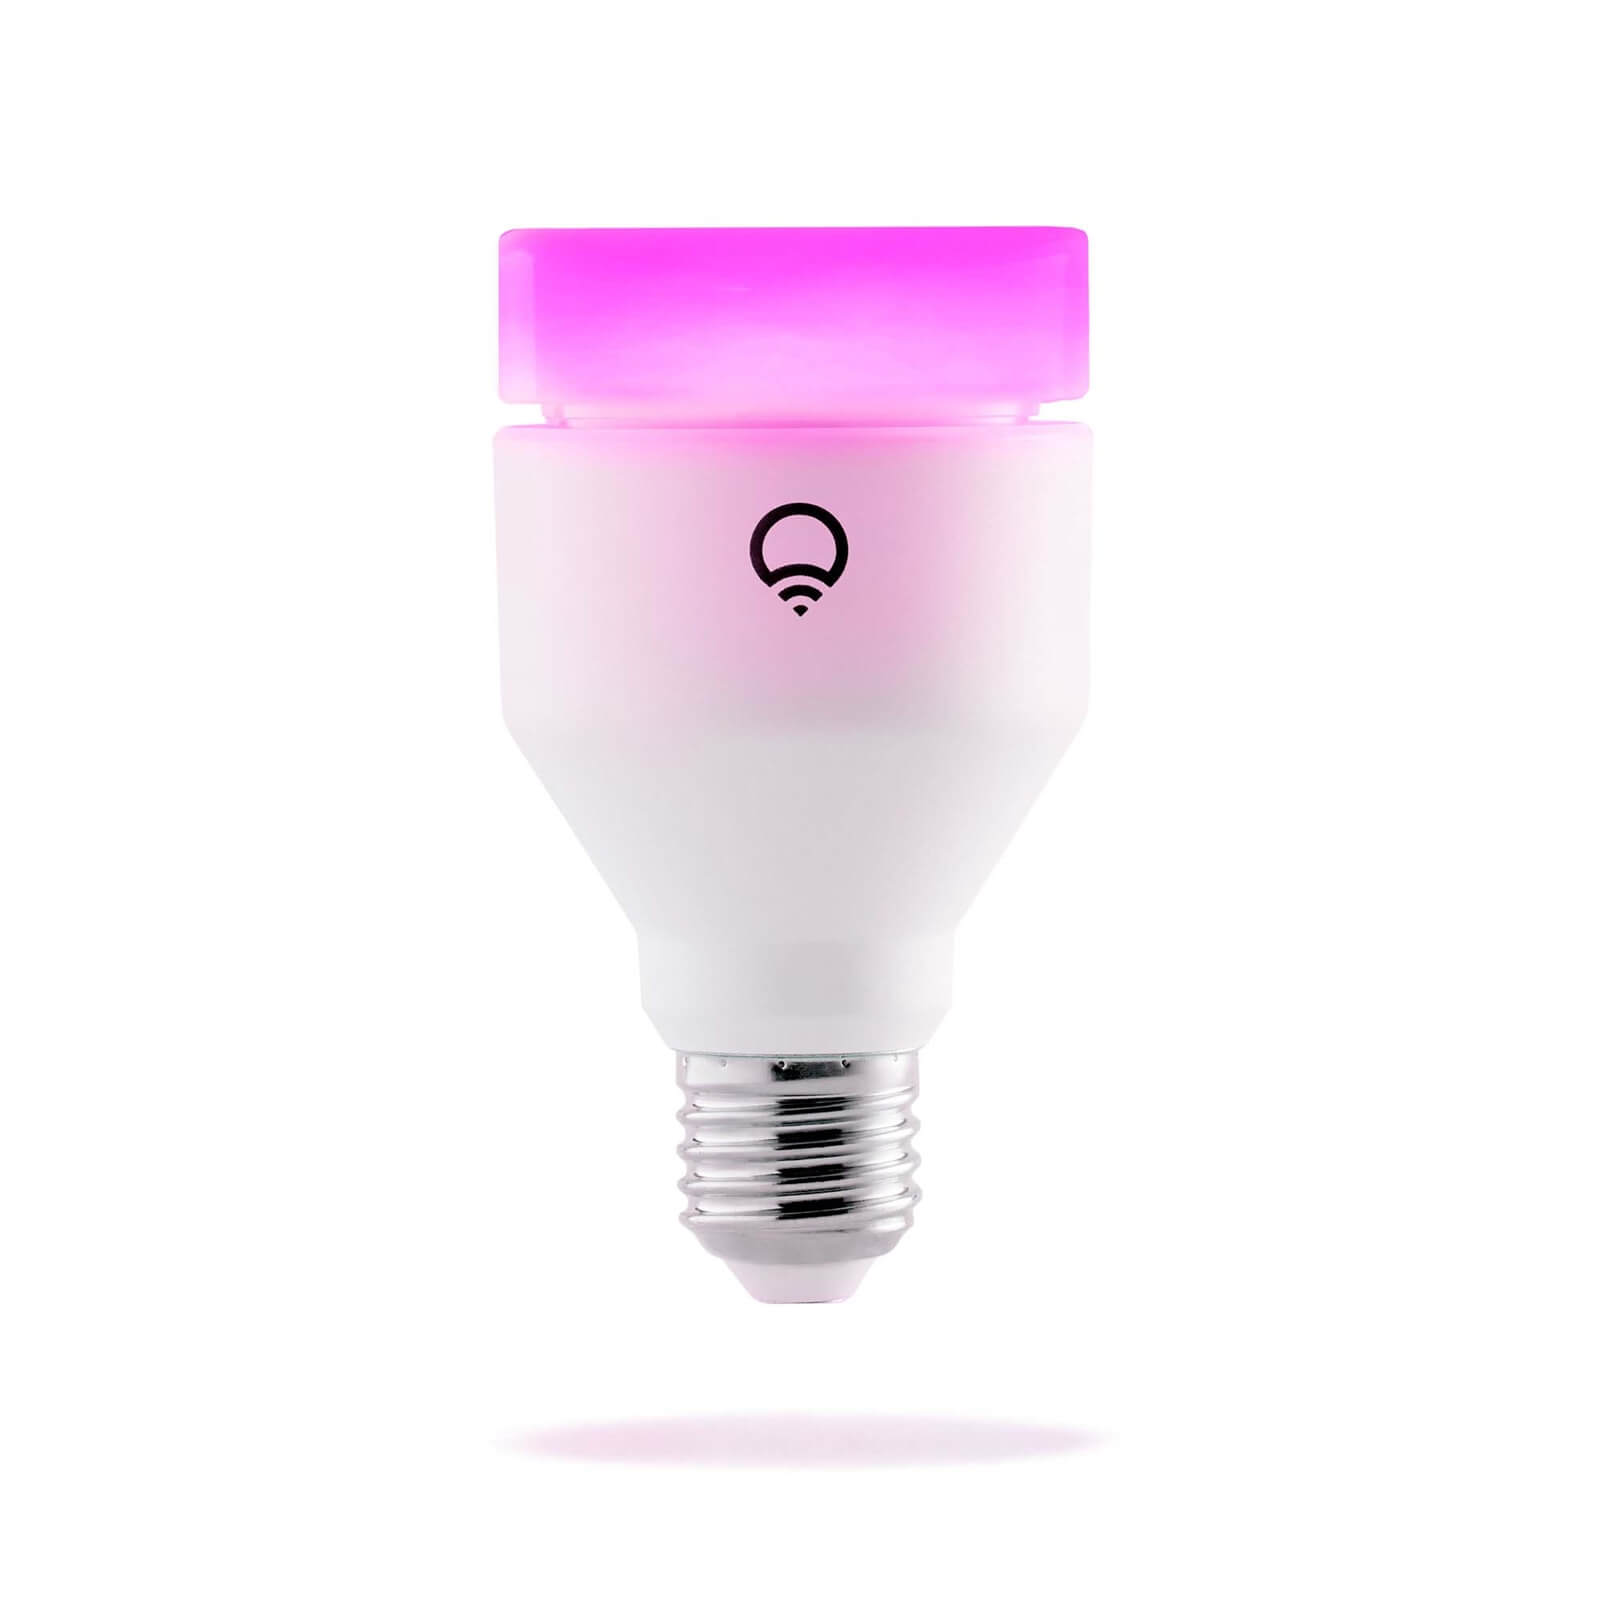 LIFX (E27) Wi-Fi Smart LED Light Bulb - Colour